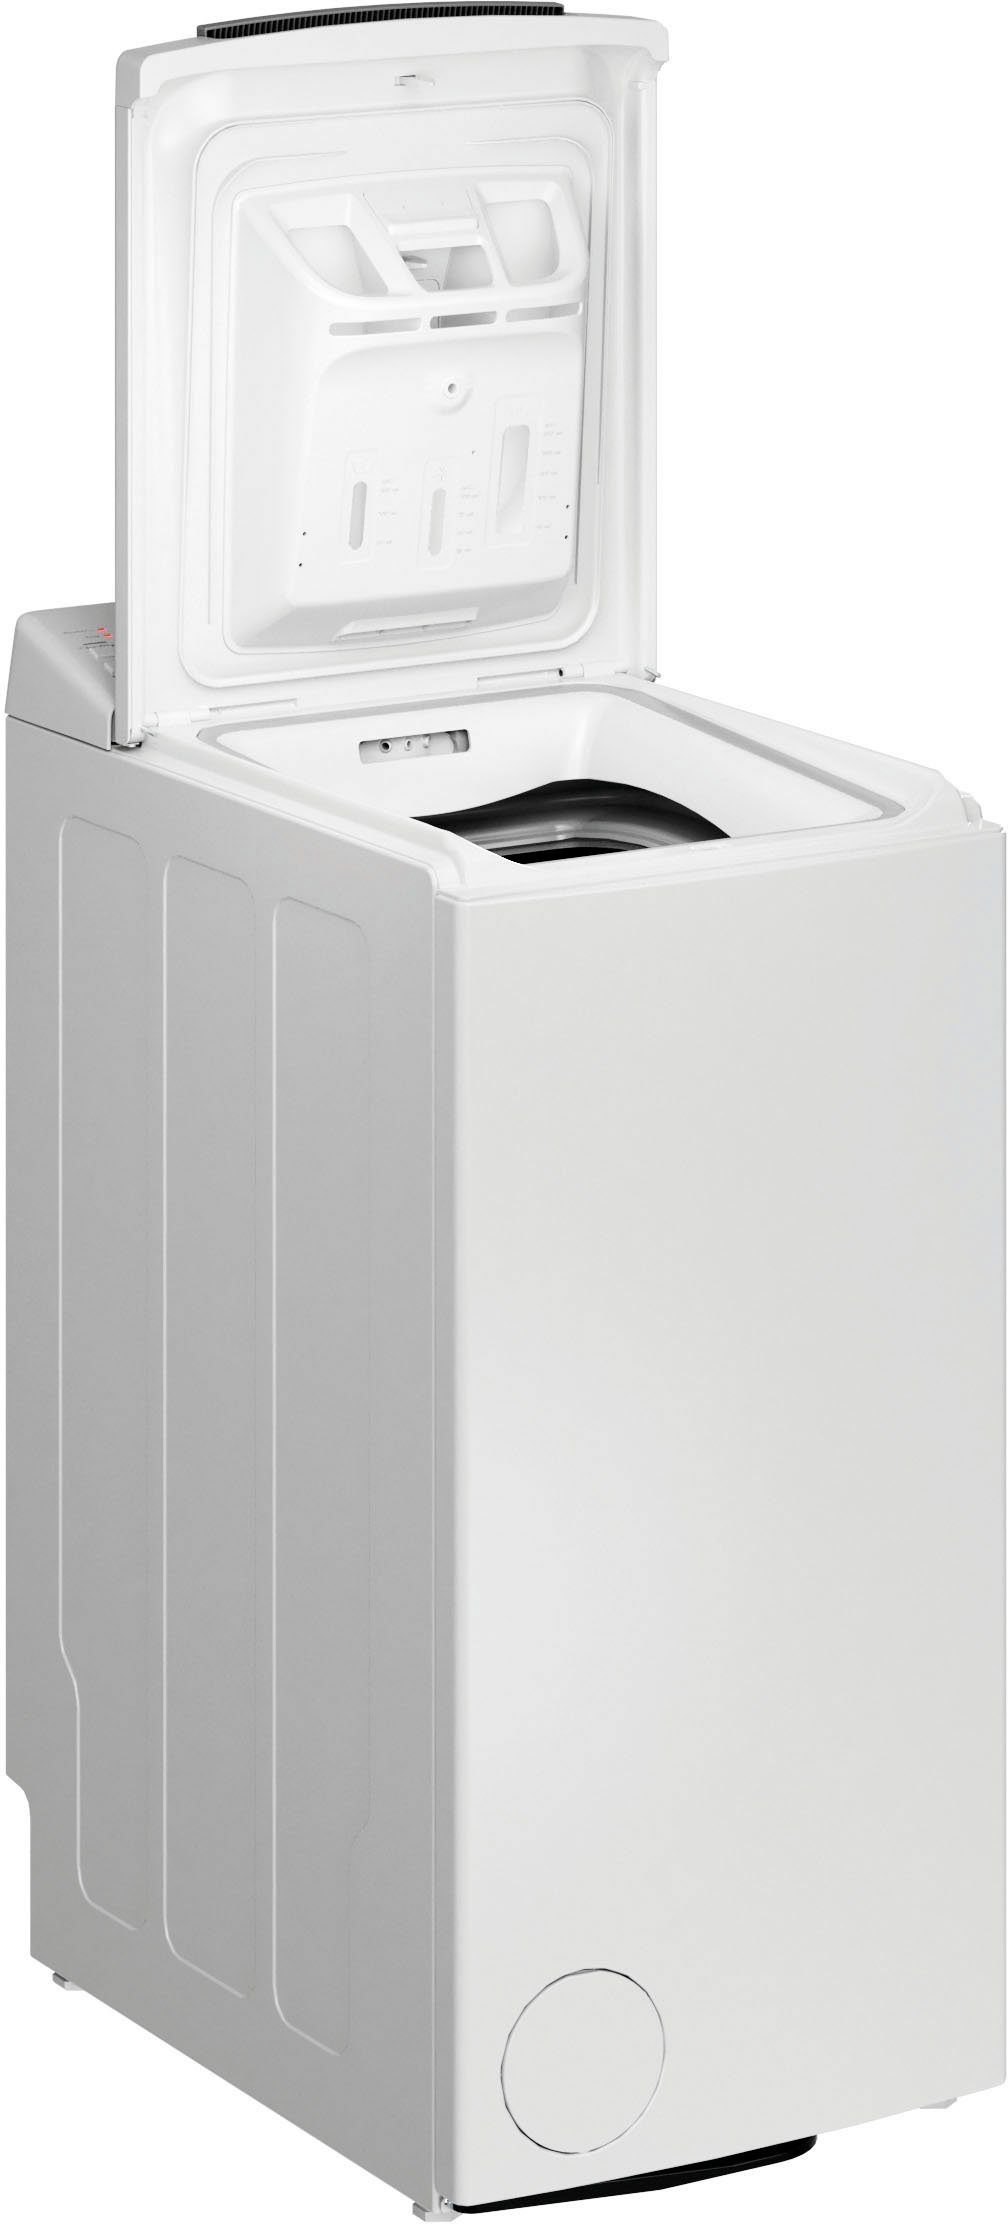 BAUKNECHT Waschmaschine Toplader WMT Pro 6ZB, kg, Eco U/min 6 1200